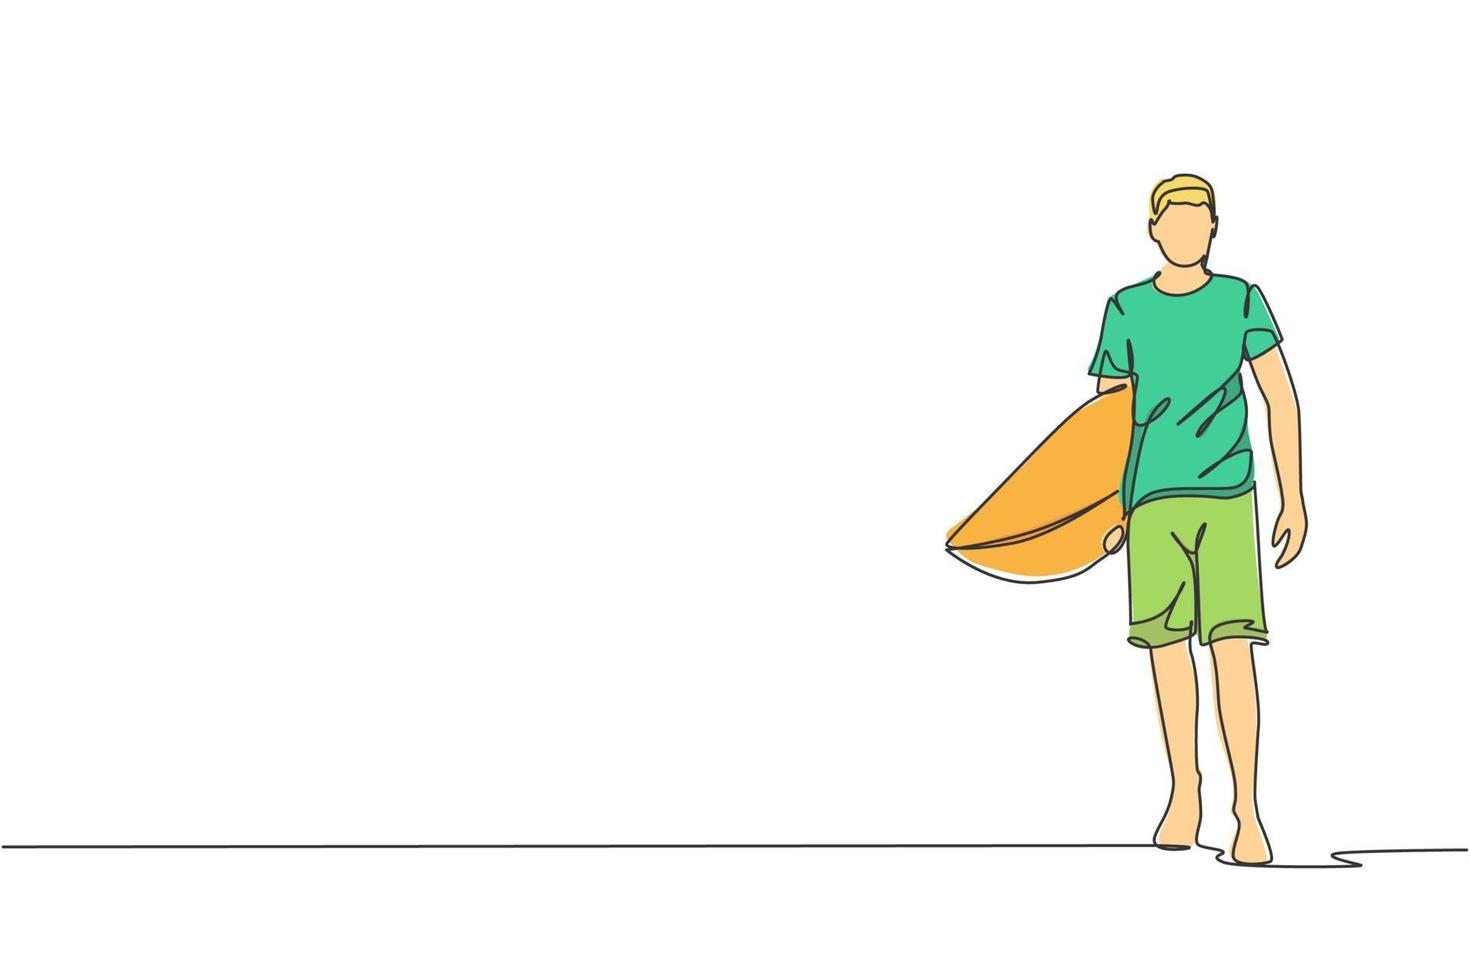 enda kontinuerlig linjeteckning av ung professionell surfare som går och bär surfbräda på sandstranden. extrem vattensport koncept. sommarsemester. trendiga en rad rita design vektorillustration vektor